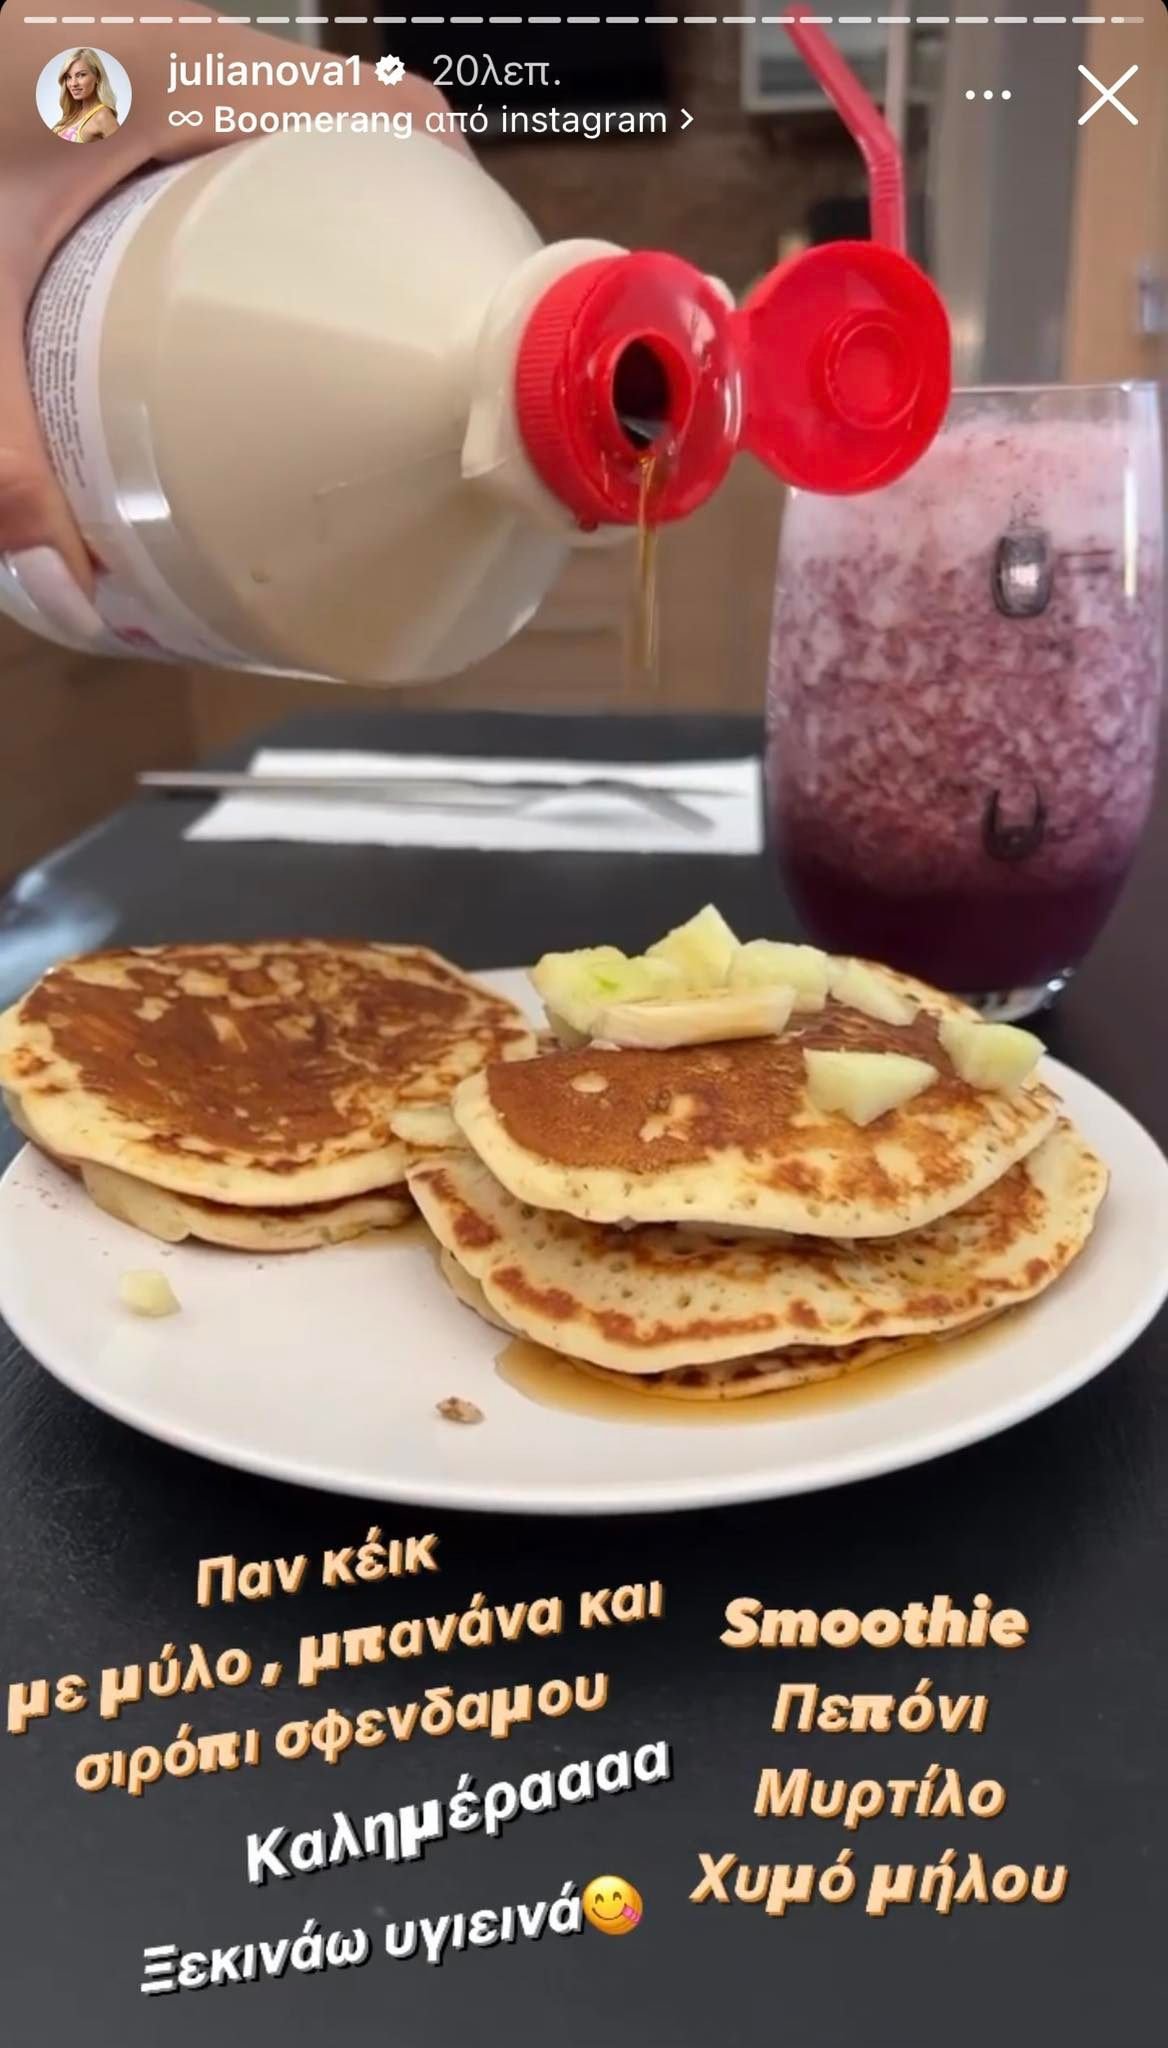 Τζούλια Νόβα: Το διατροφικό πρωινό γεύμα που επιλέγει όταν θέλει να χάσει βάρος